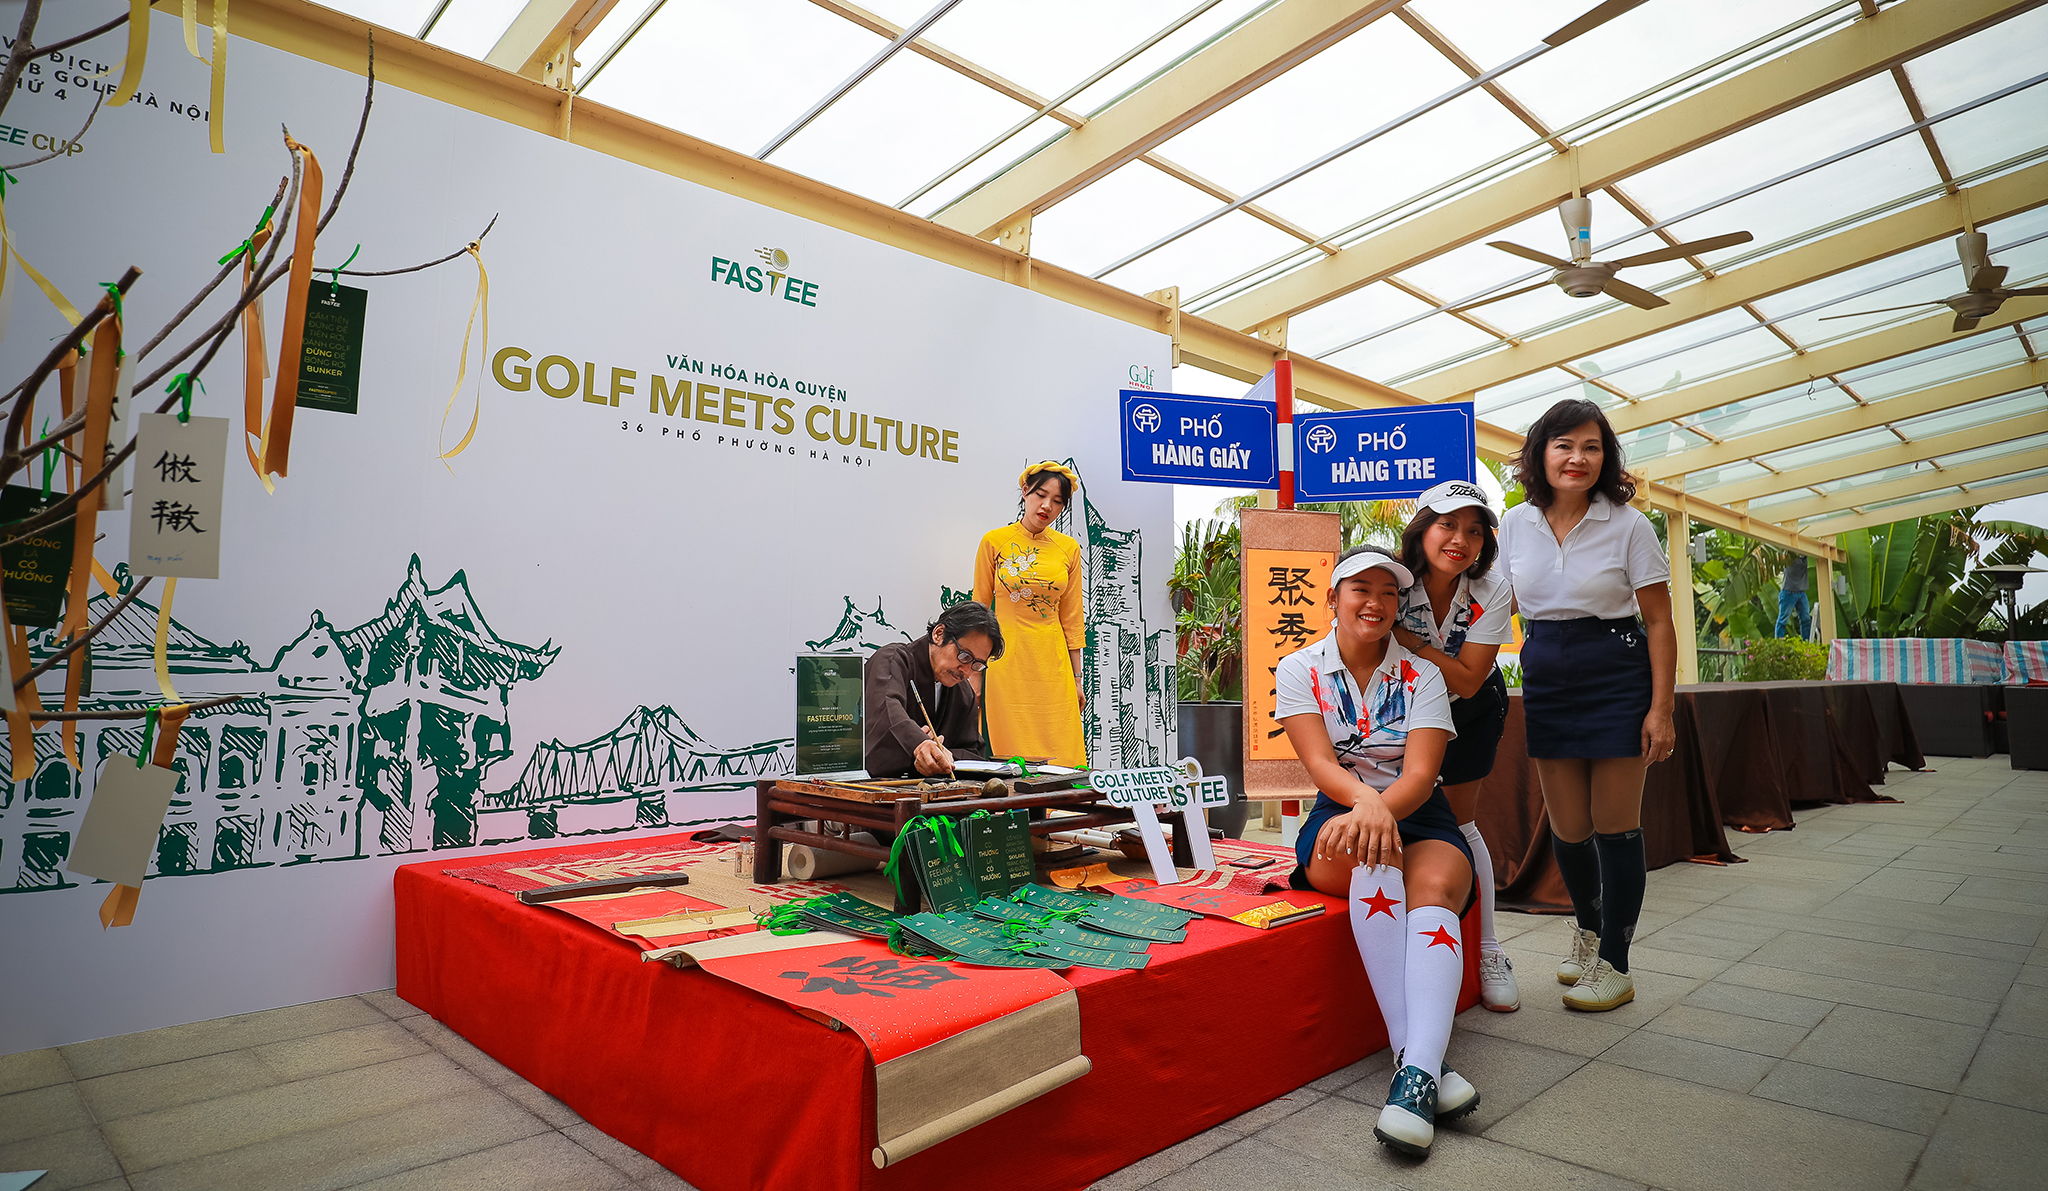 Giải Vô địch các CLB Golf Hà Nội lần 4-Fastee Cup 2020: Đặc sắc và ý nghĩa!